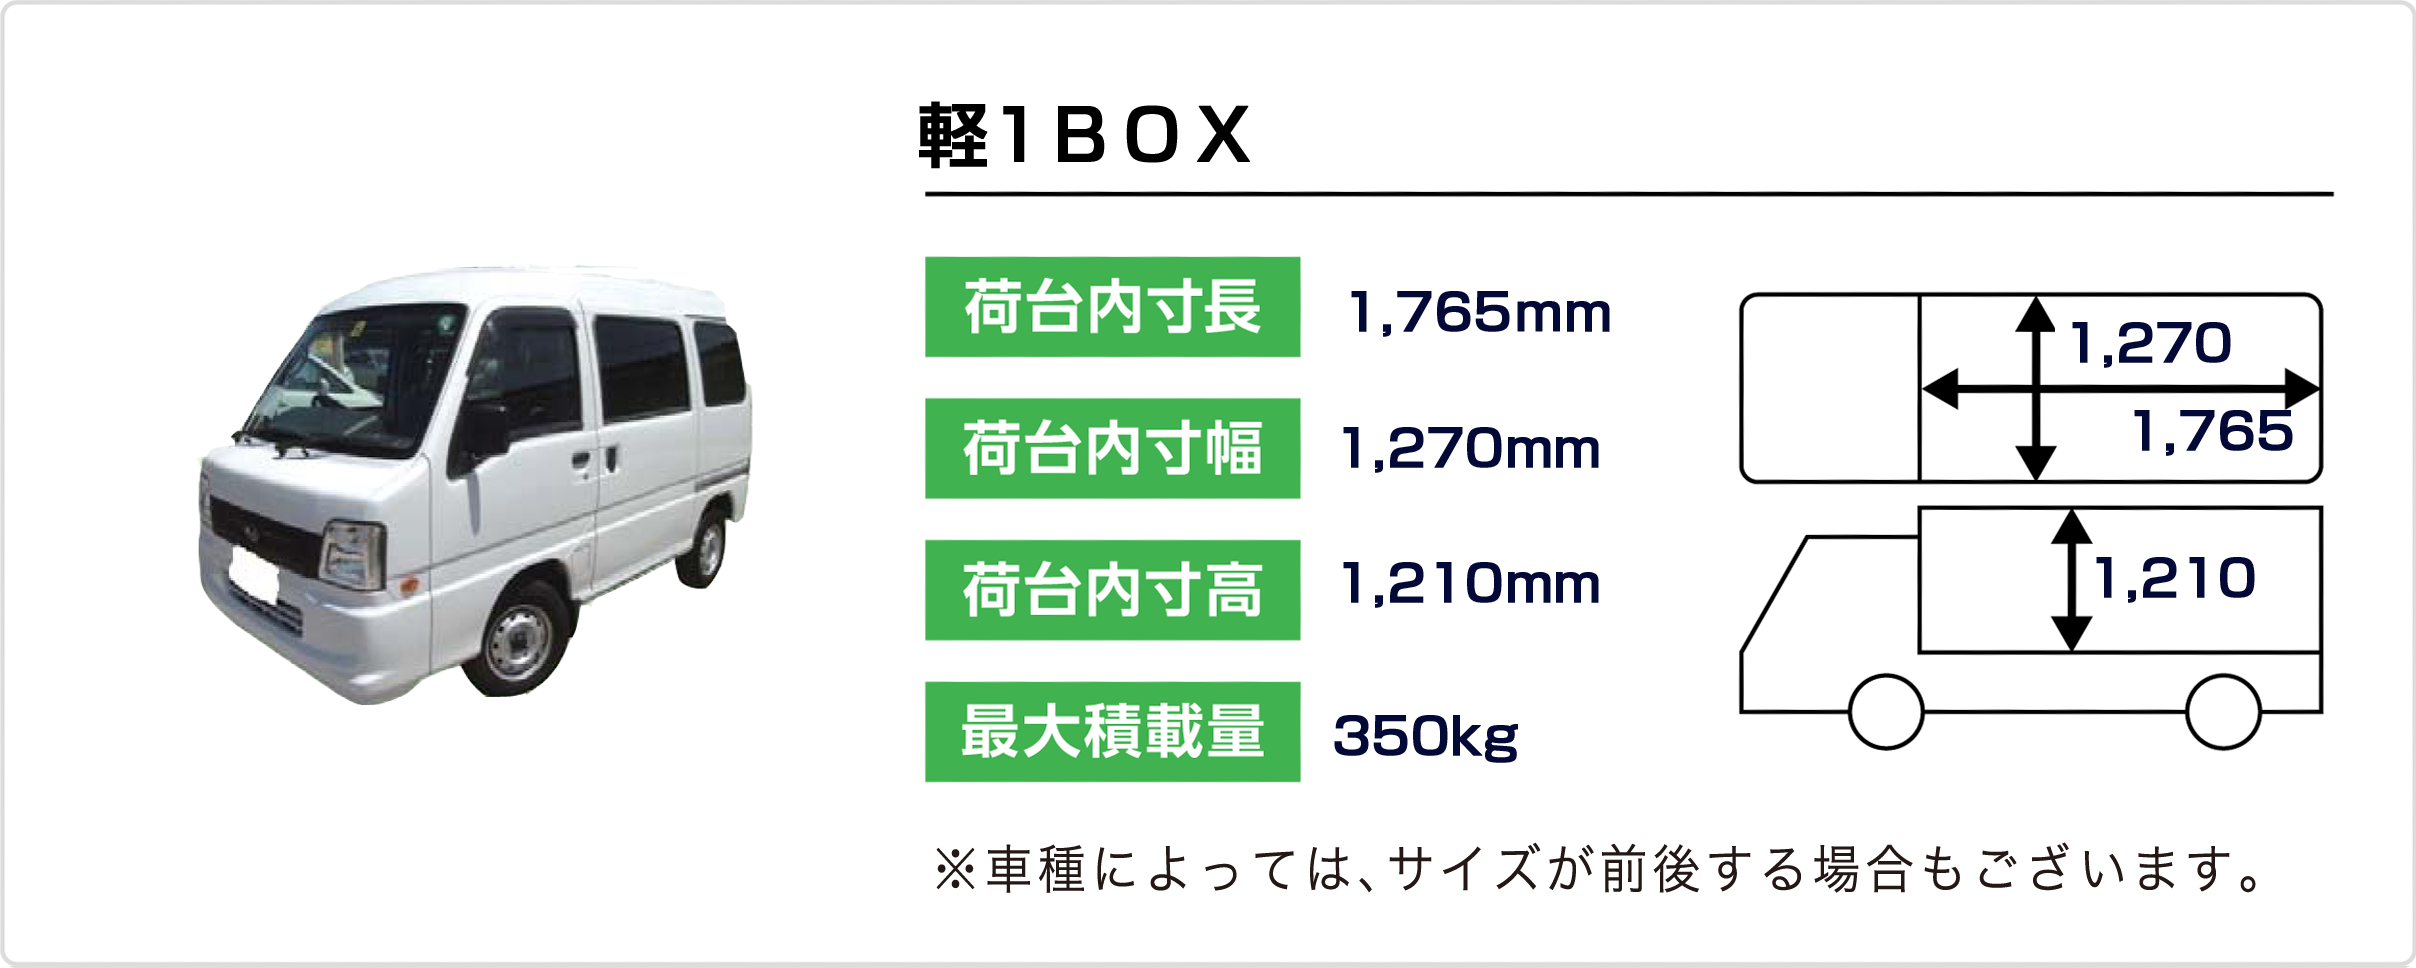 軽BOX1